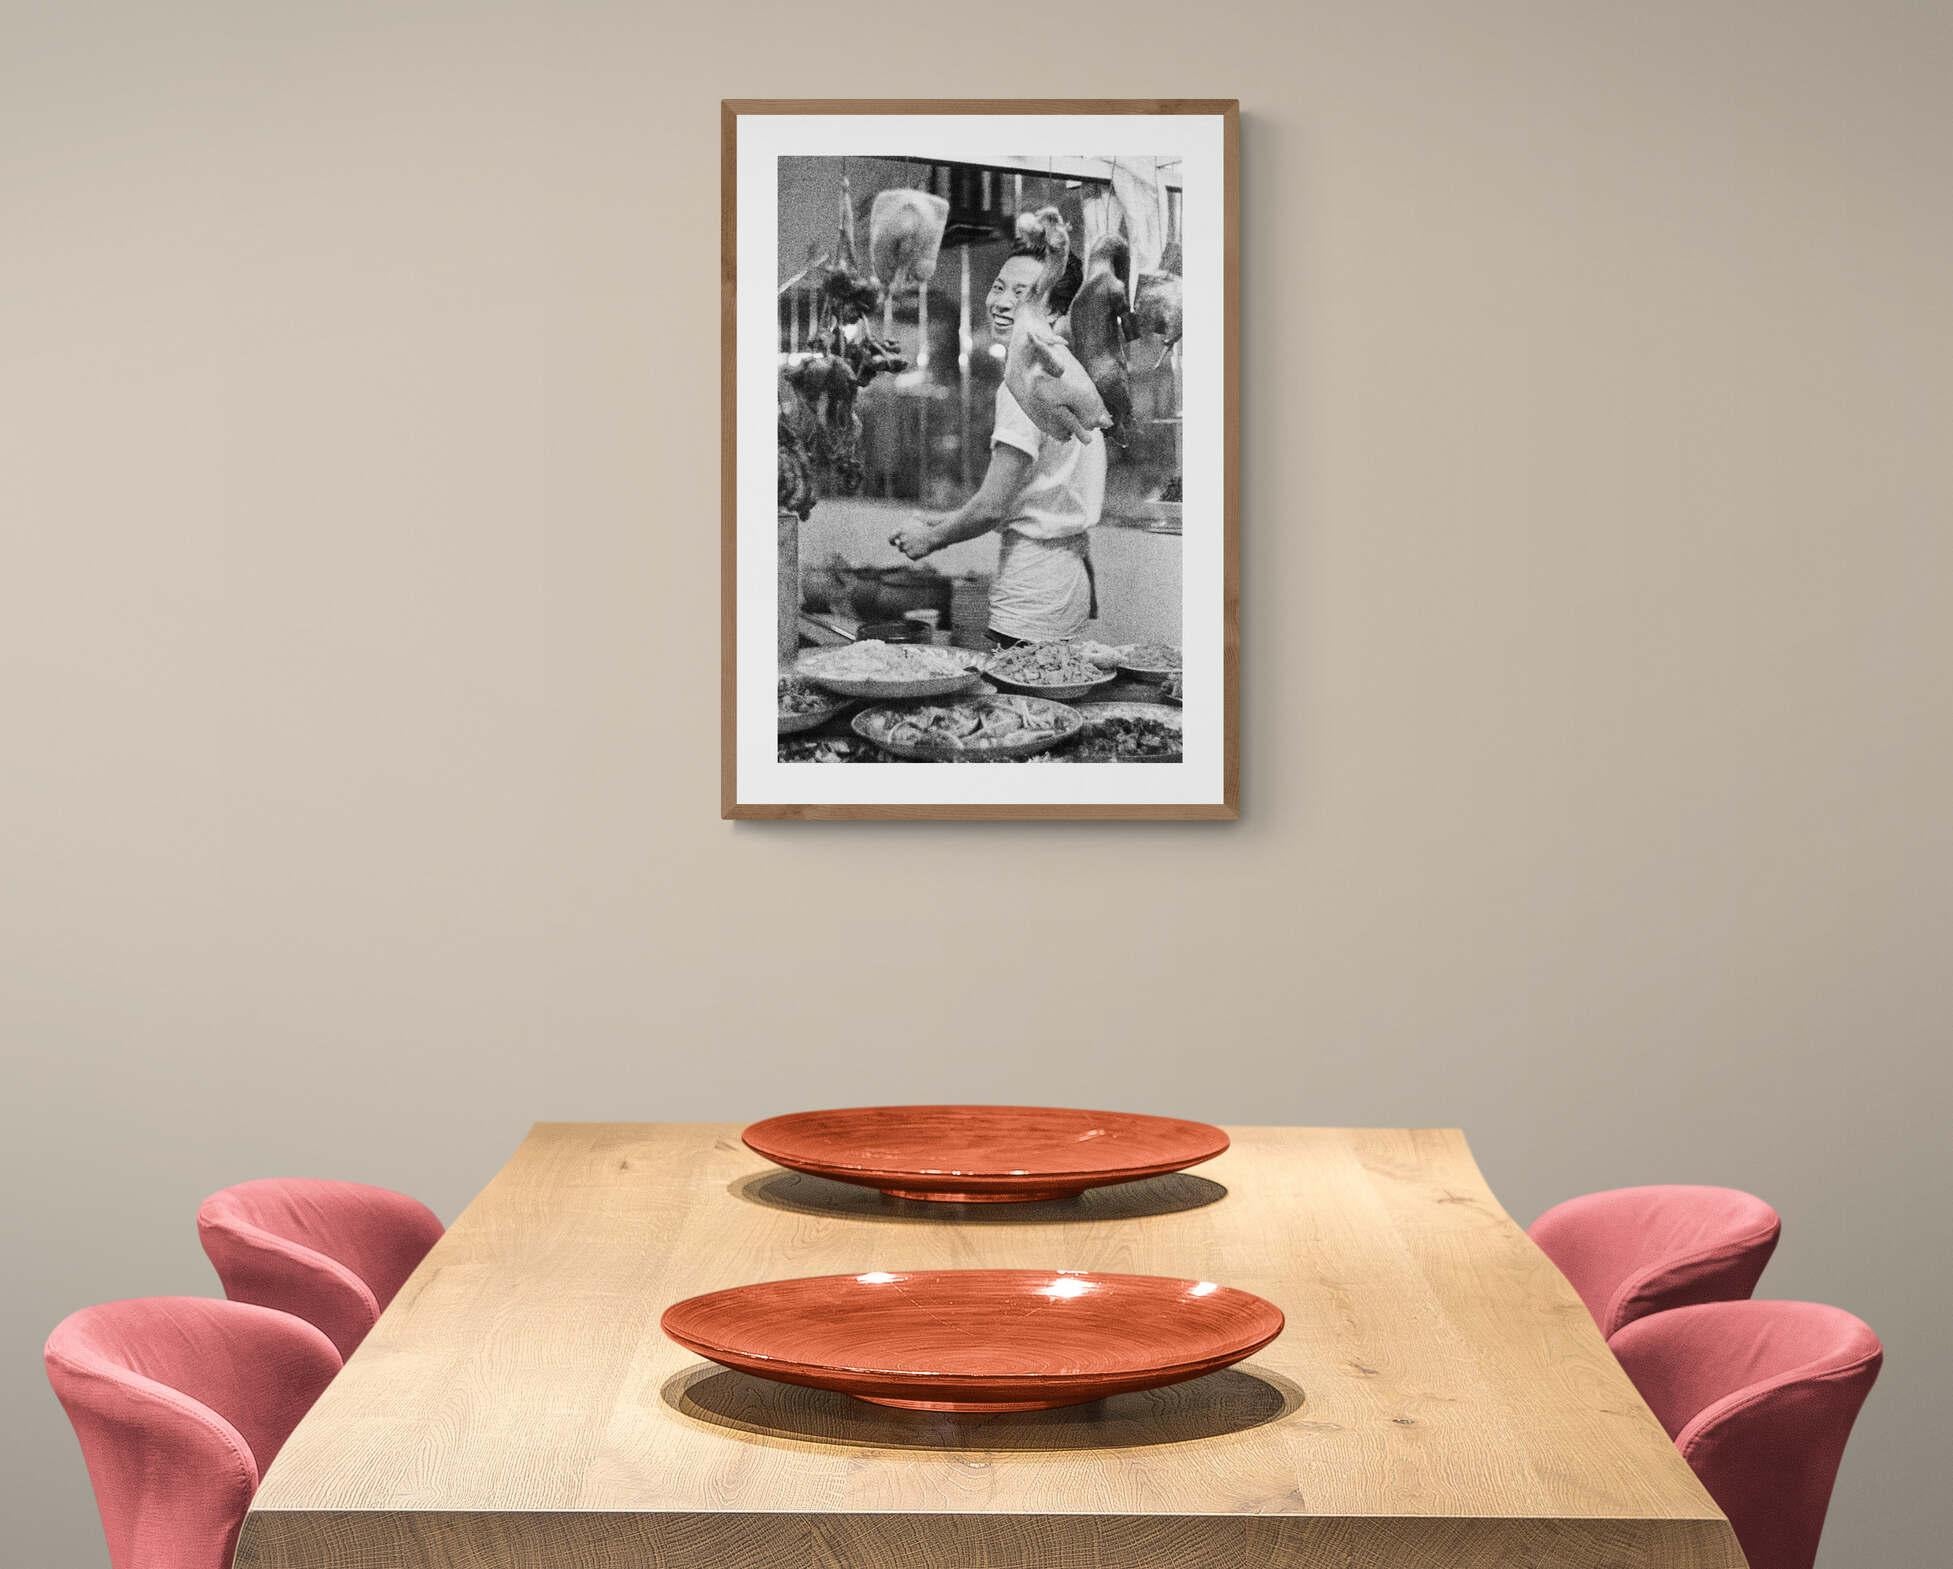 Il cuoco felice - Thailand 1959 - Voll gerahmter Schwarz-Weiß-Kunstdruck (Fotorealismus), Photograph, von Fabrizio La Torre